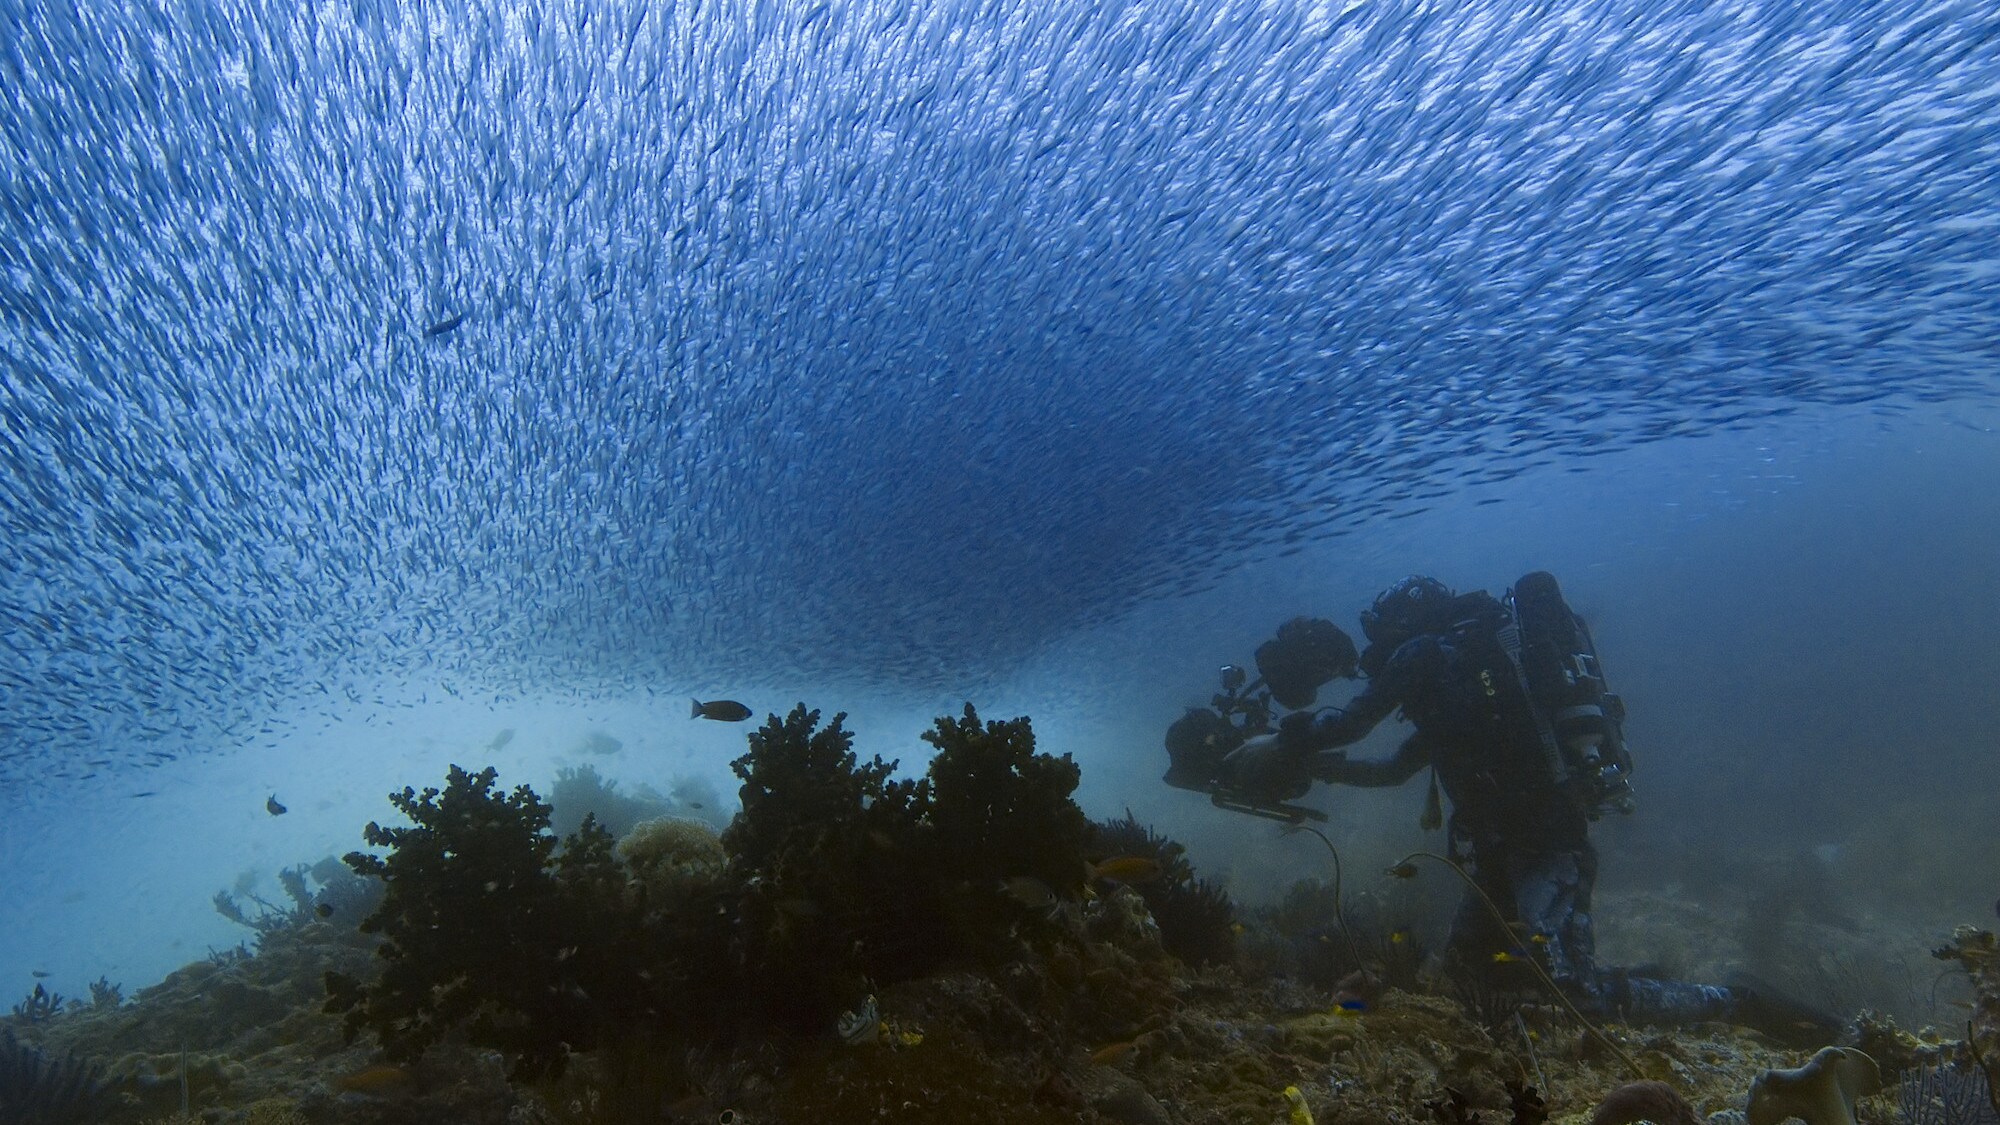 Bertie Gregory filming underwater. (National Geographic for Disney+/Dan Beecham)